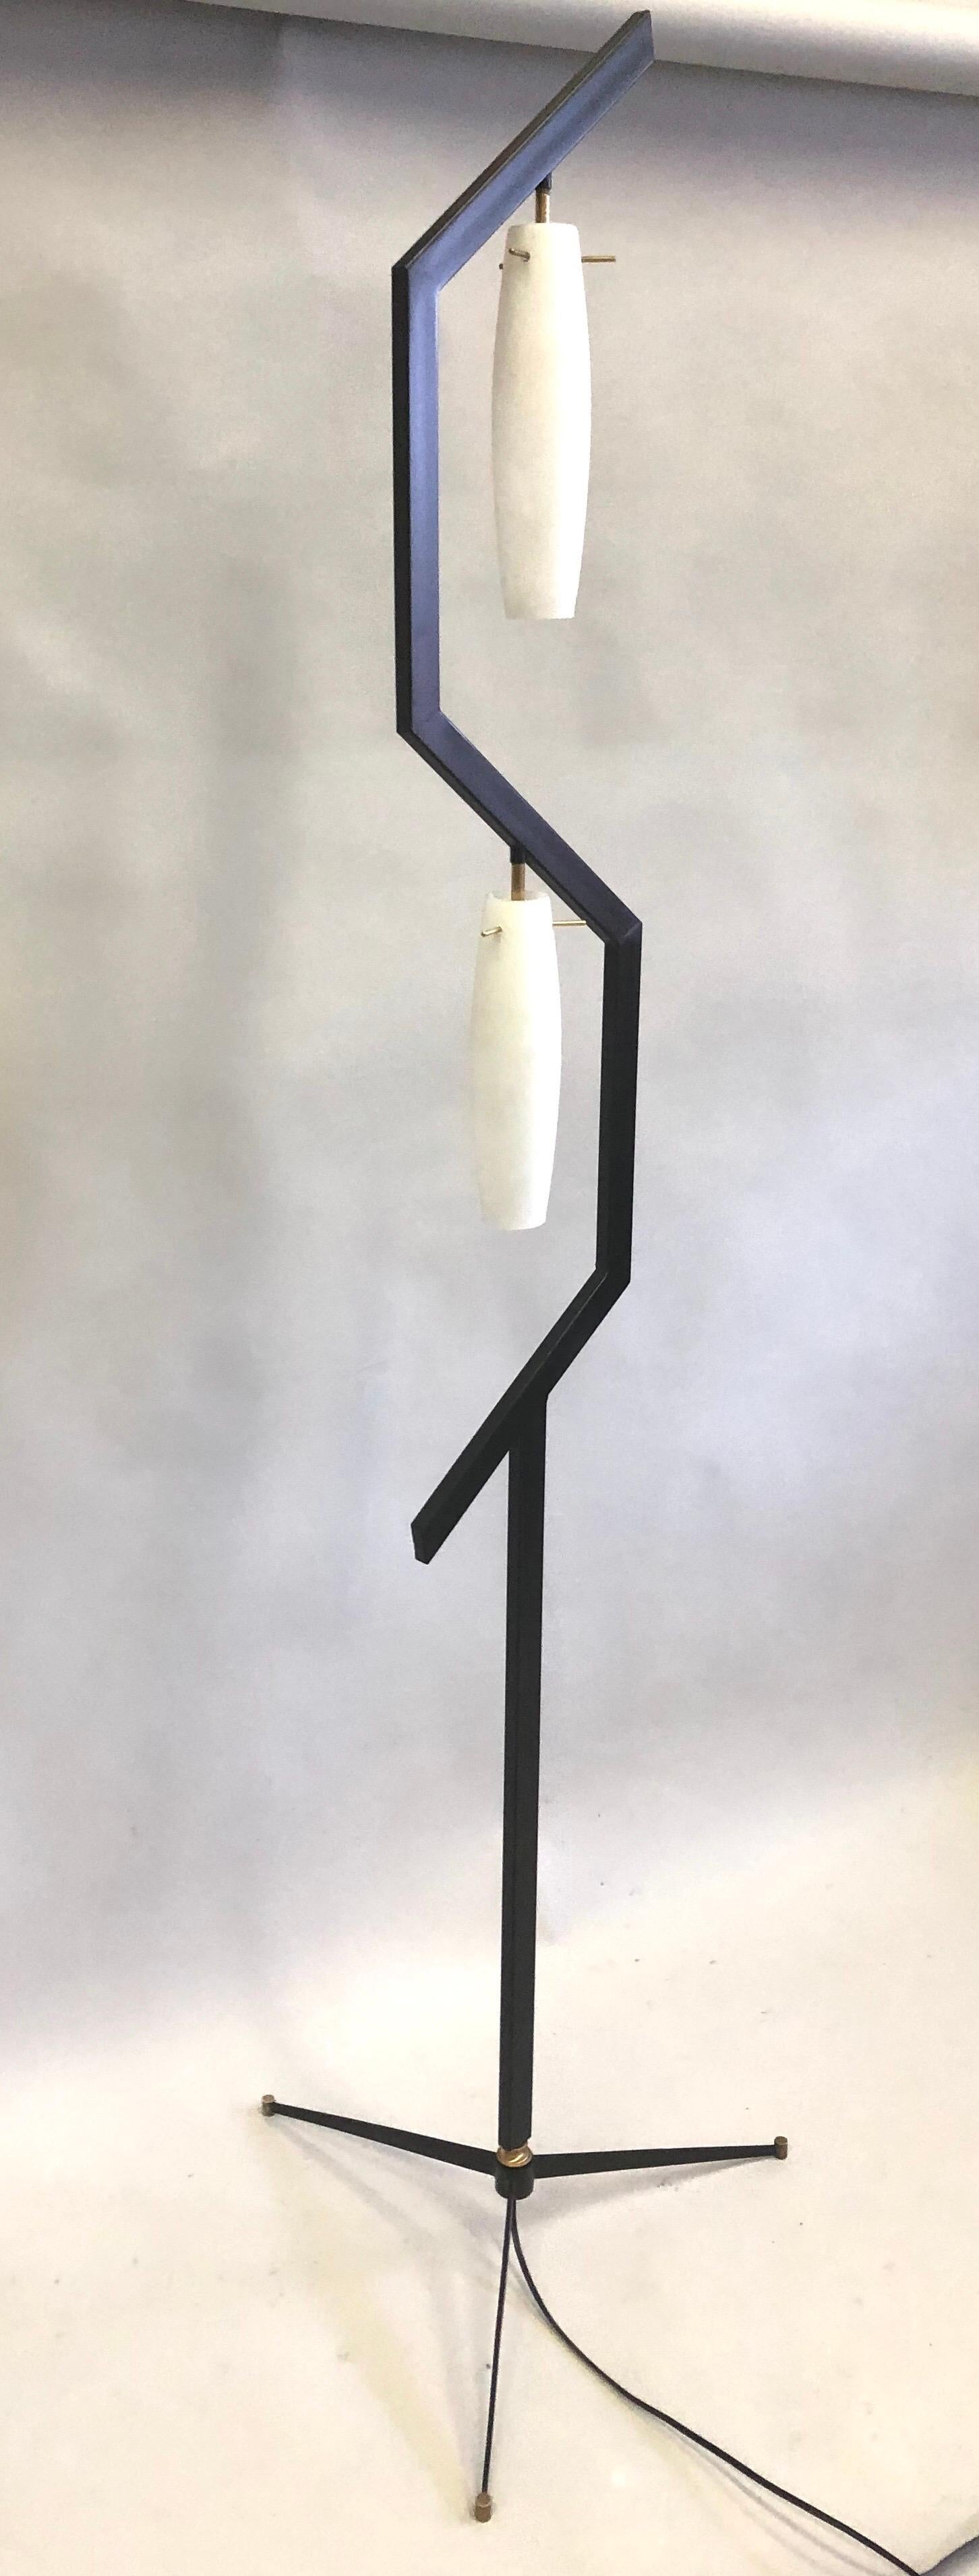 Enameled Italian Mid-Century Modern Floor Lamp in the style of Arredoluce For Sale